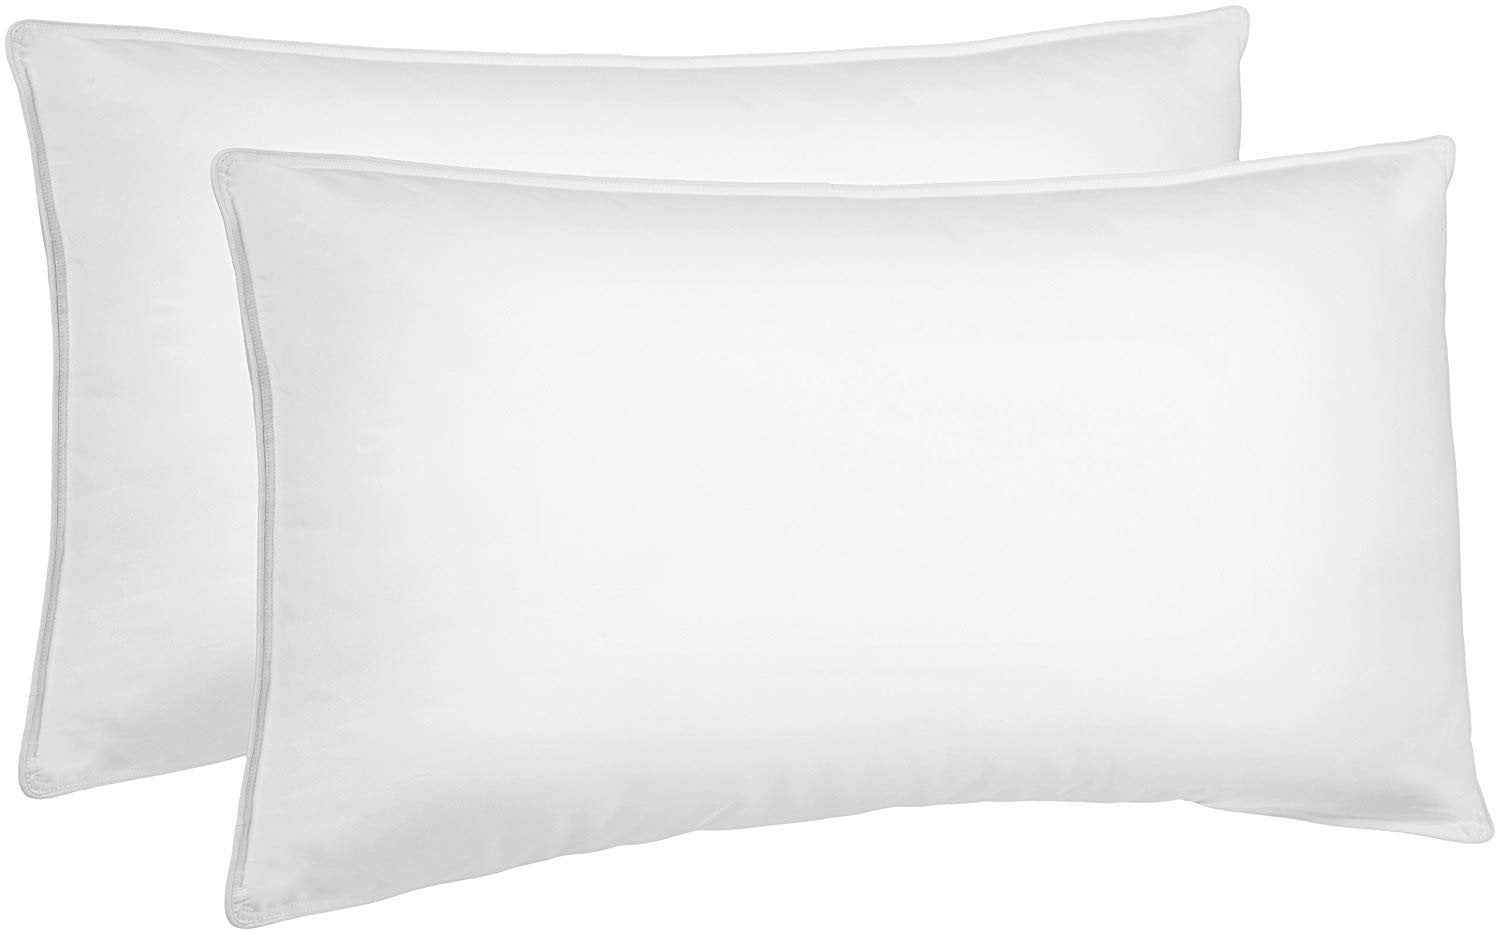 Budget Range Standard Pillows 2 Pack Hollowfibre